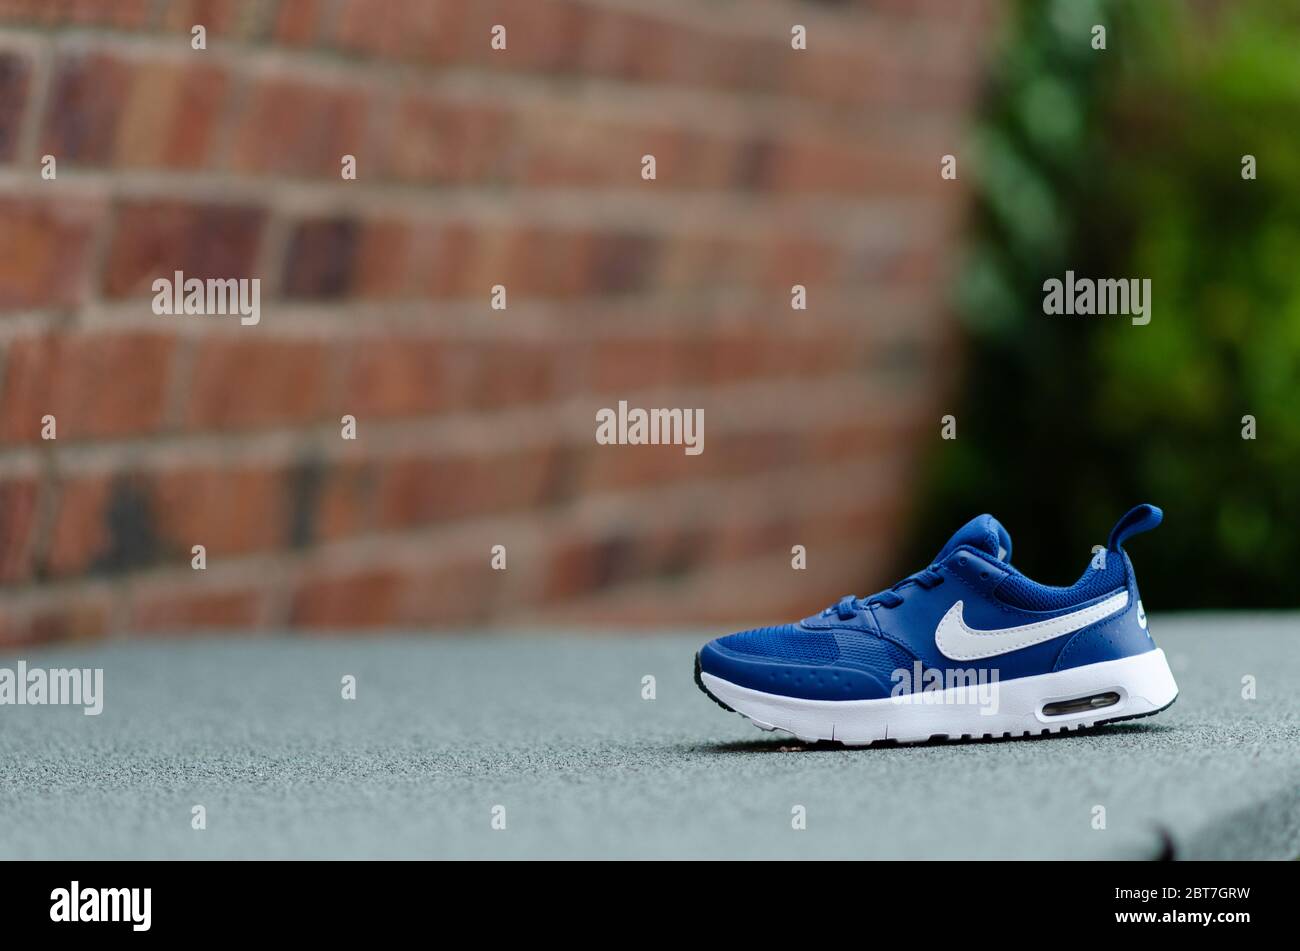 La foto ravvicinata del paio di scarpe Nike Air blu per bambini. Il muro di mattoni è sullo sfondo. Per l'imaging è stato utilizzato un campo visivo poco profondo. Foto Stock